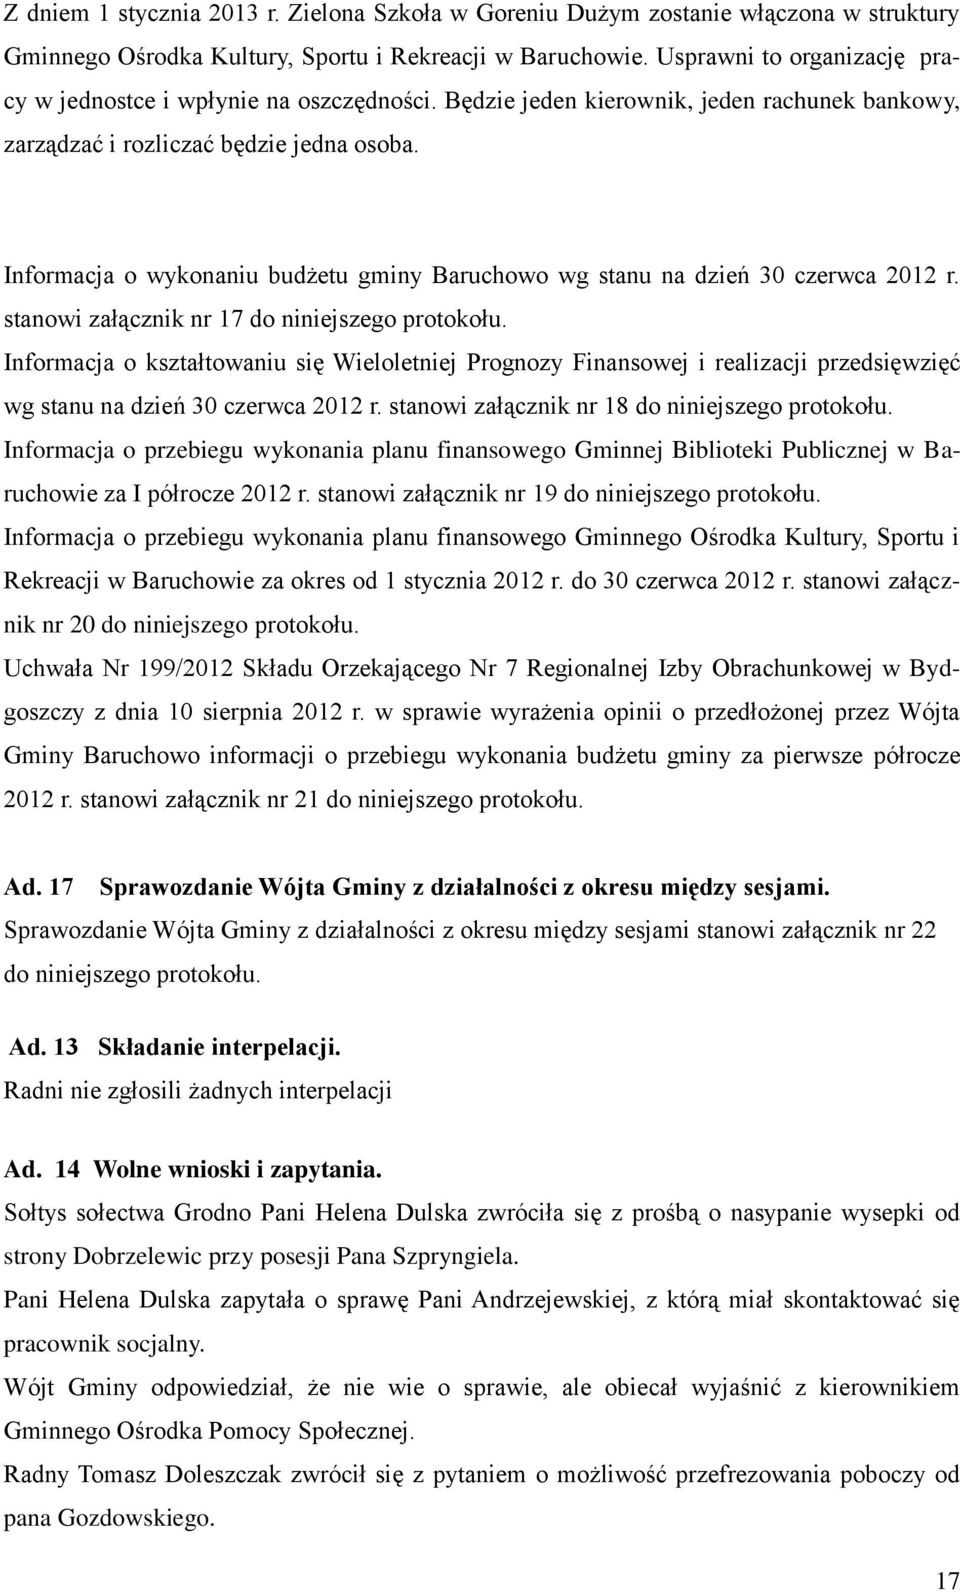 Informacja o wykonaniu budżetu gminy Baruchowo wg stanu na dzień 30 czerwca 2012 r. stanowi załącznik nr 17 do niniejszego protokołu.